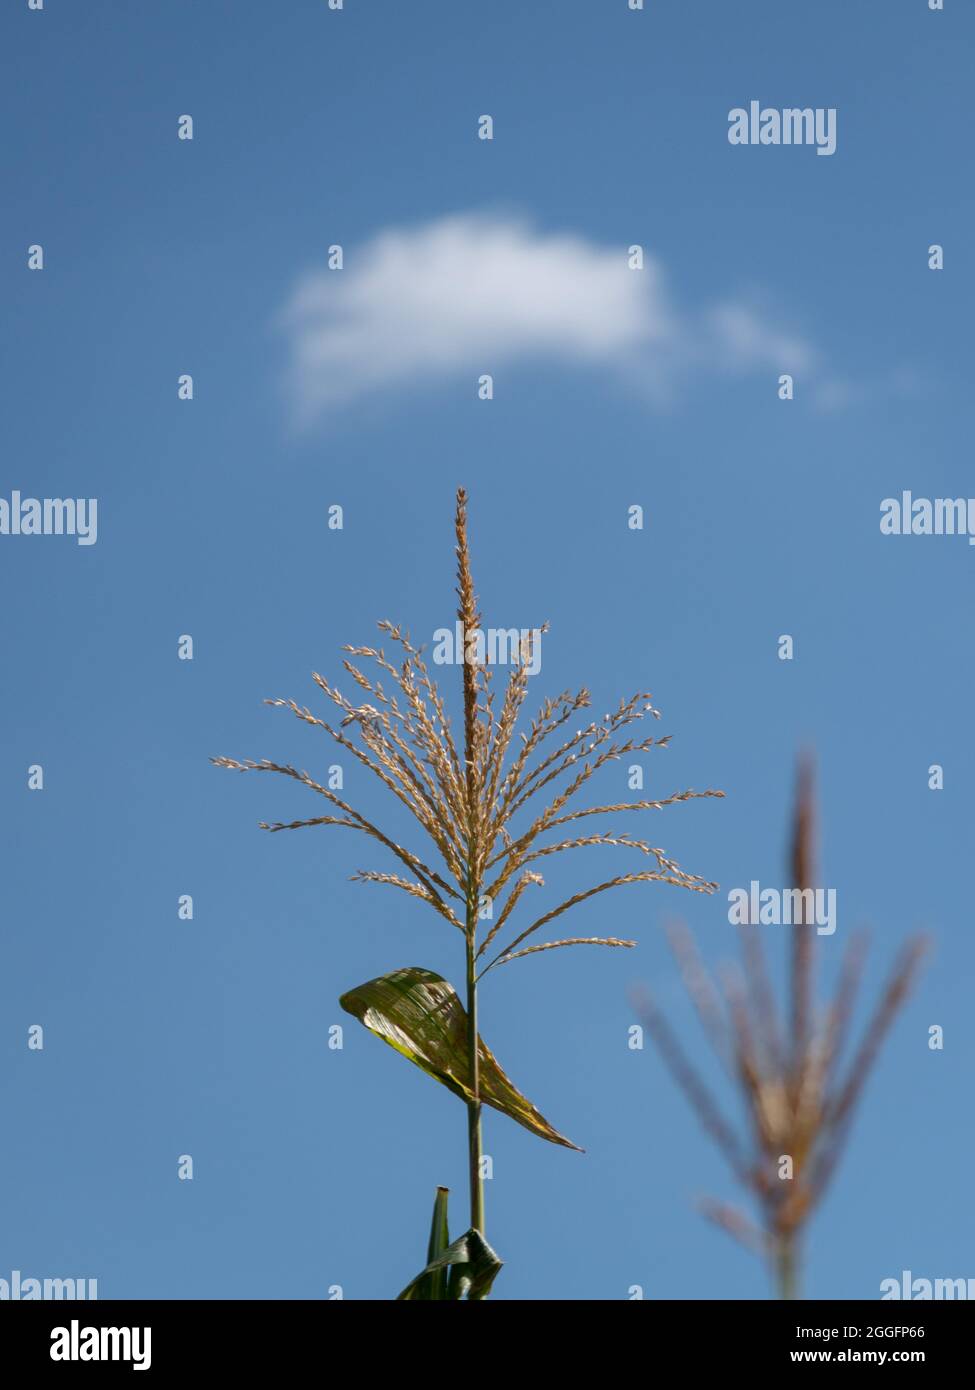 Viele kleine männliche Blüten bilden den männlichen Blütenstand, genannt die Quaste auf der Maispflanze auf dem Feld gegen den blauen Himmel mit einer Wolke Stockfoto